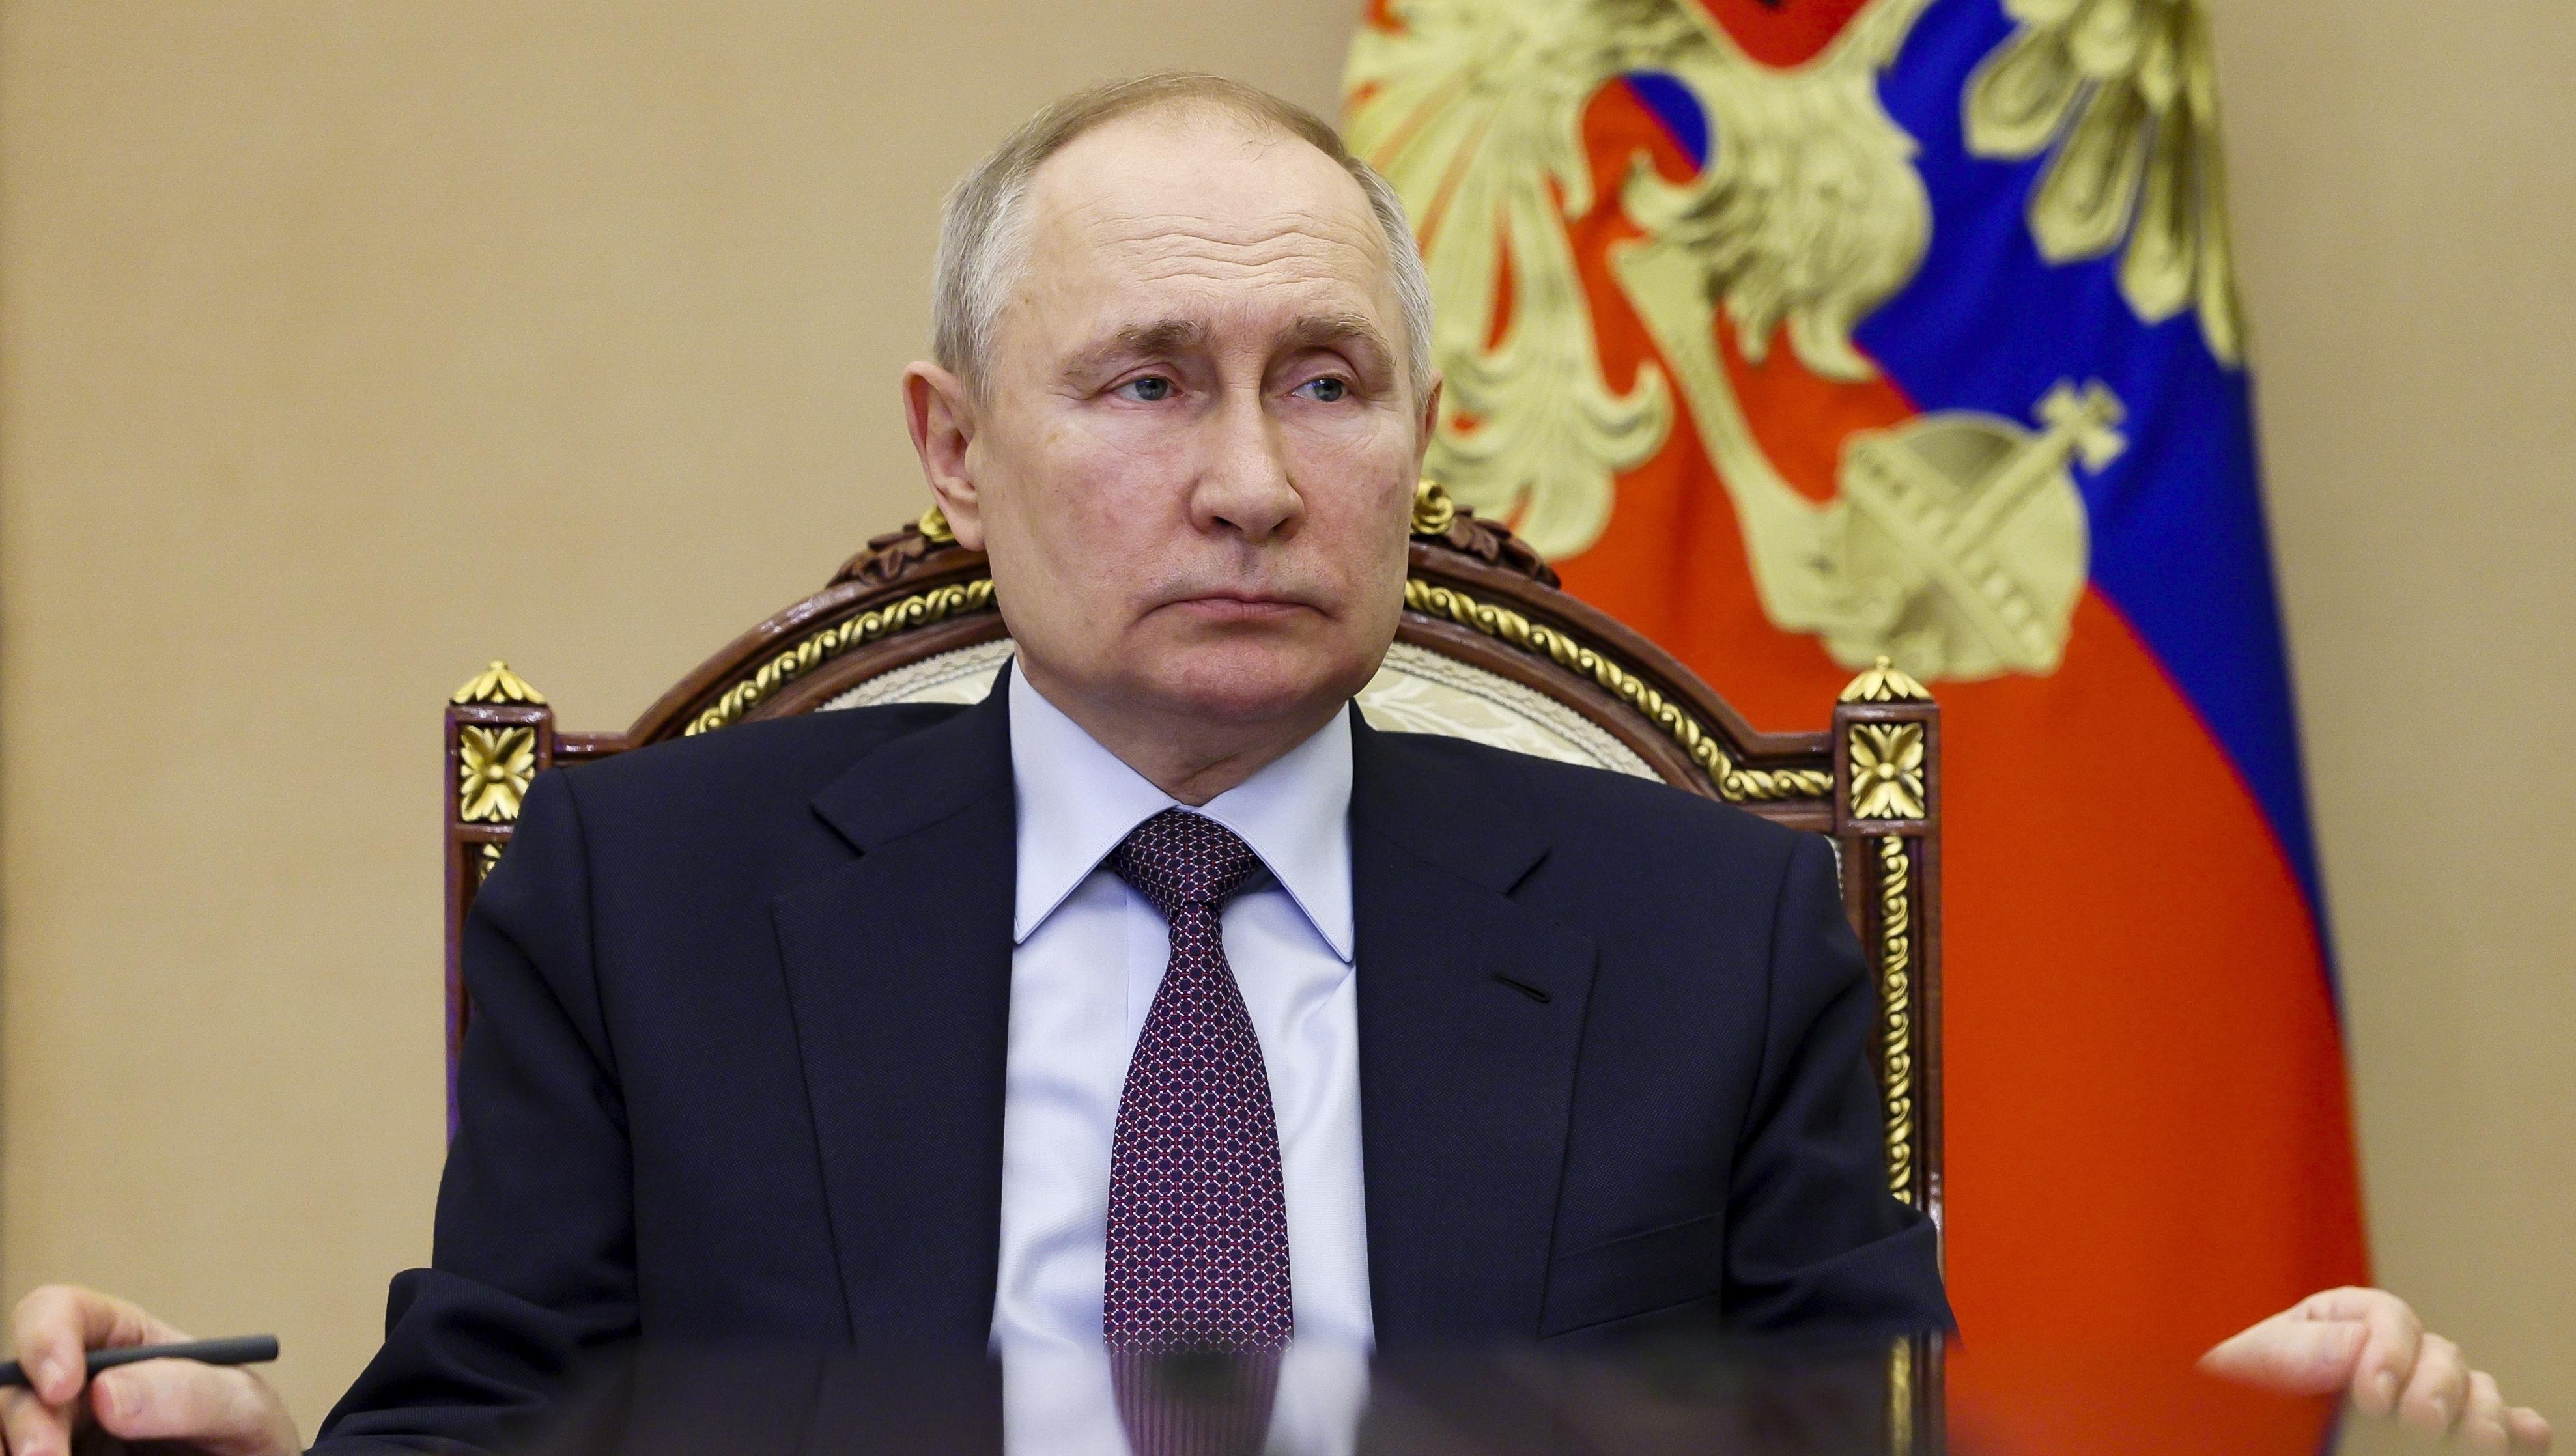 Sanktionen gegen Russland gescheitert, doch Putins Achillesferse bleiben Öl und Gas